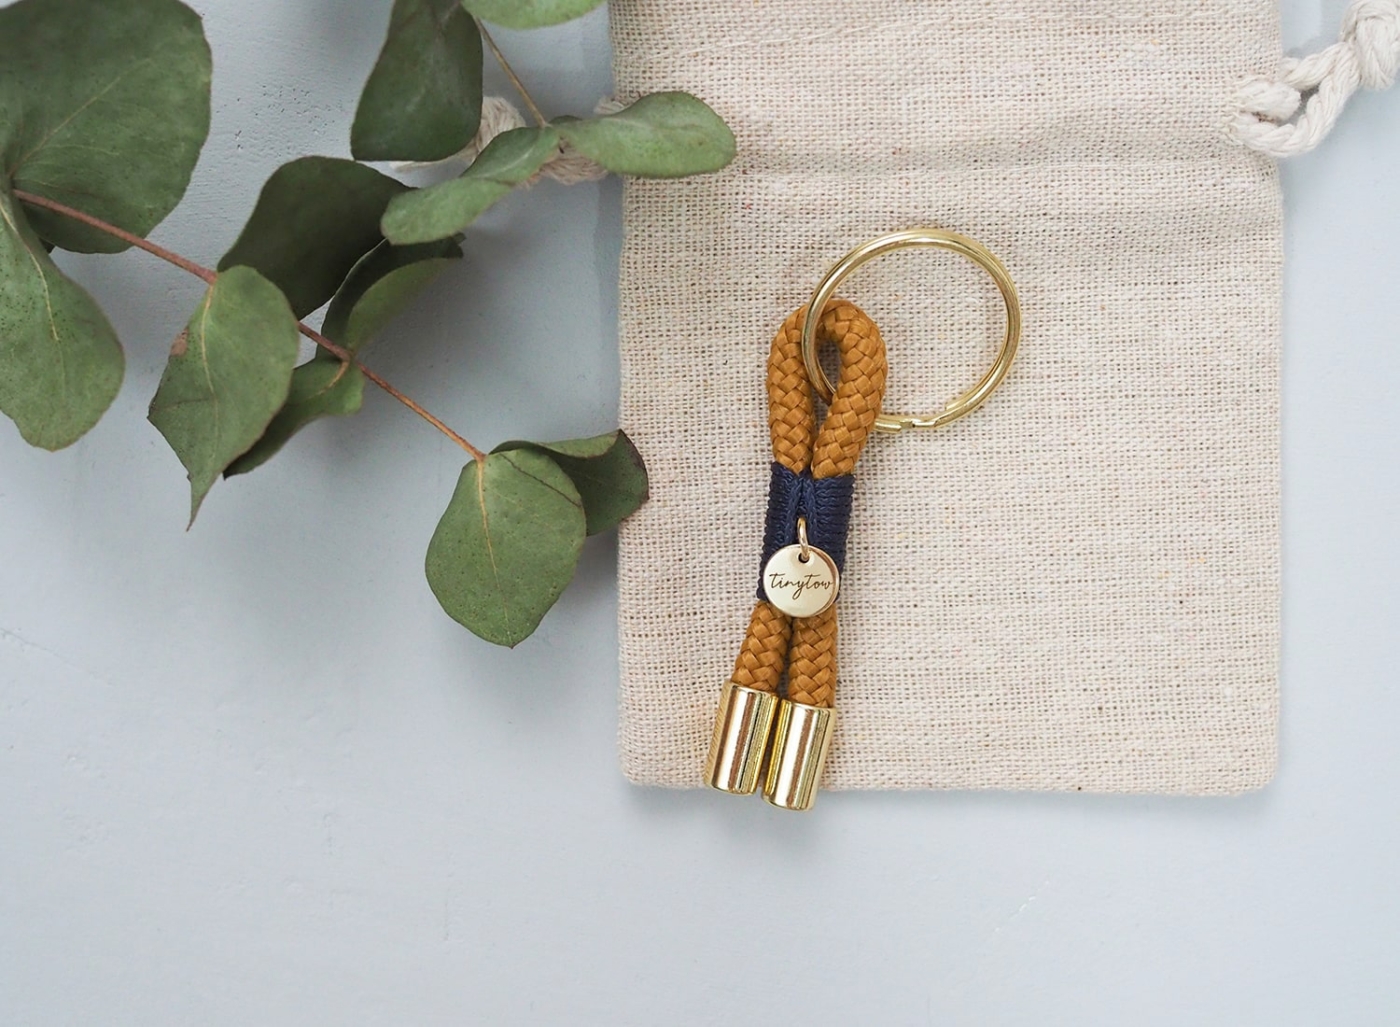 Schlüsselanhänger aus Tau in camel mit blauer Umwickelung (Takelung), goldenen Details und Leinen-Säckchen.